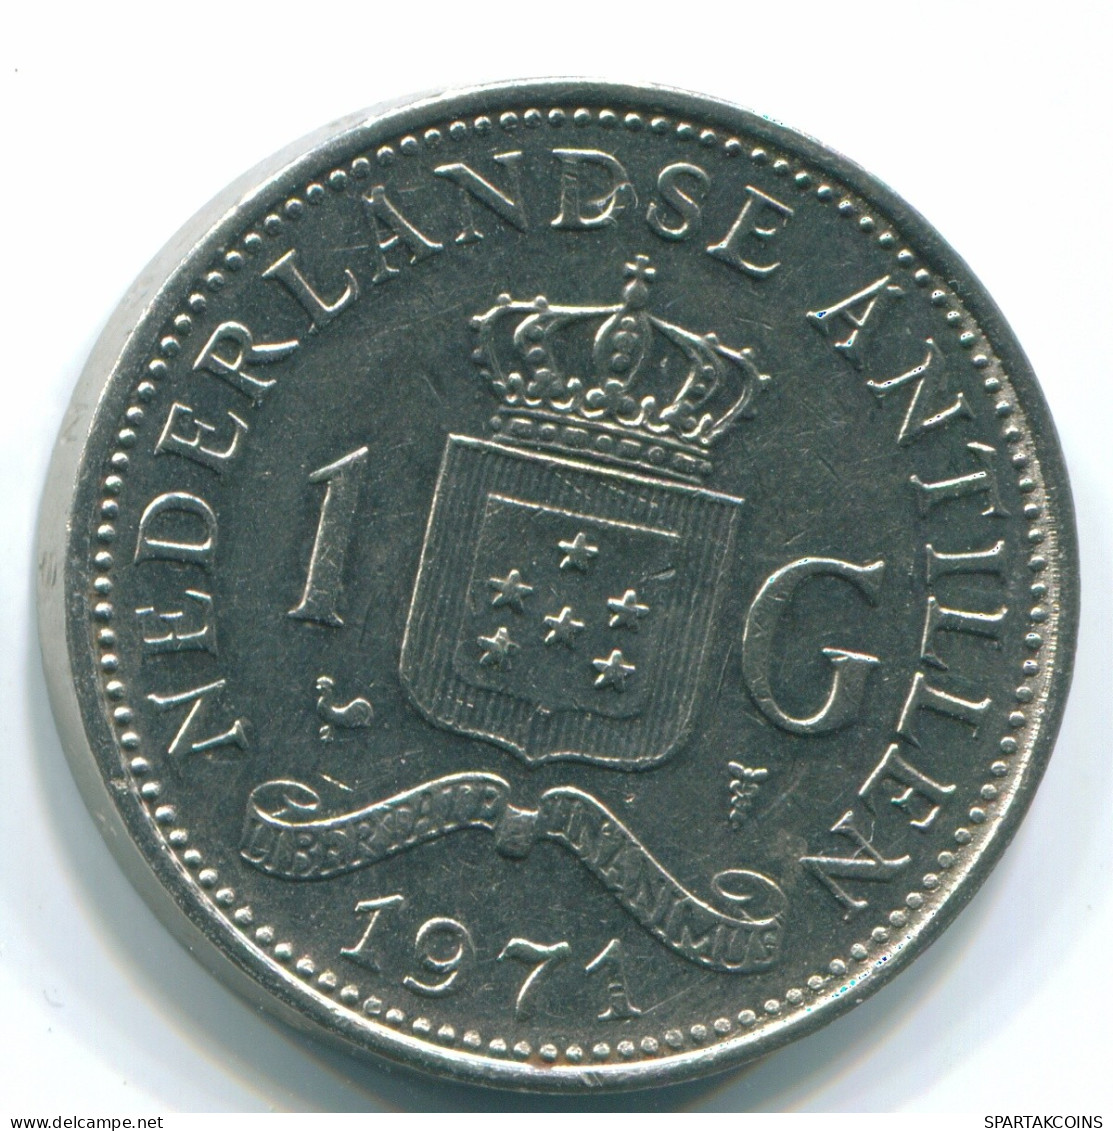 1 GULDEN 1971 NIEDERLÄNDISCHE ANTILLEN Nickel Koloniale Münze #S11969.D.A - Niederländische Antillen